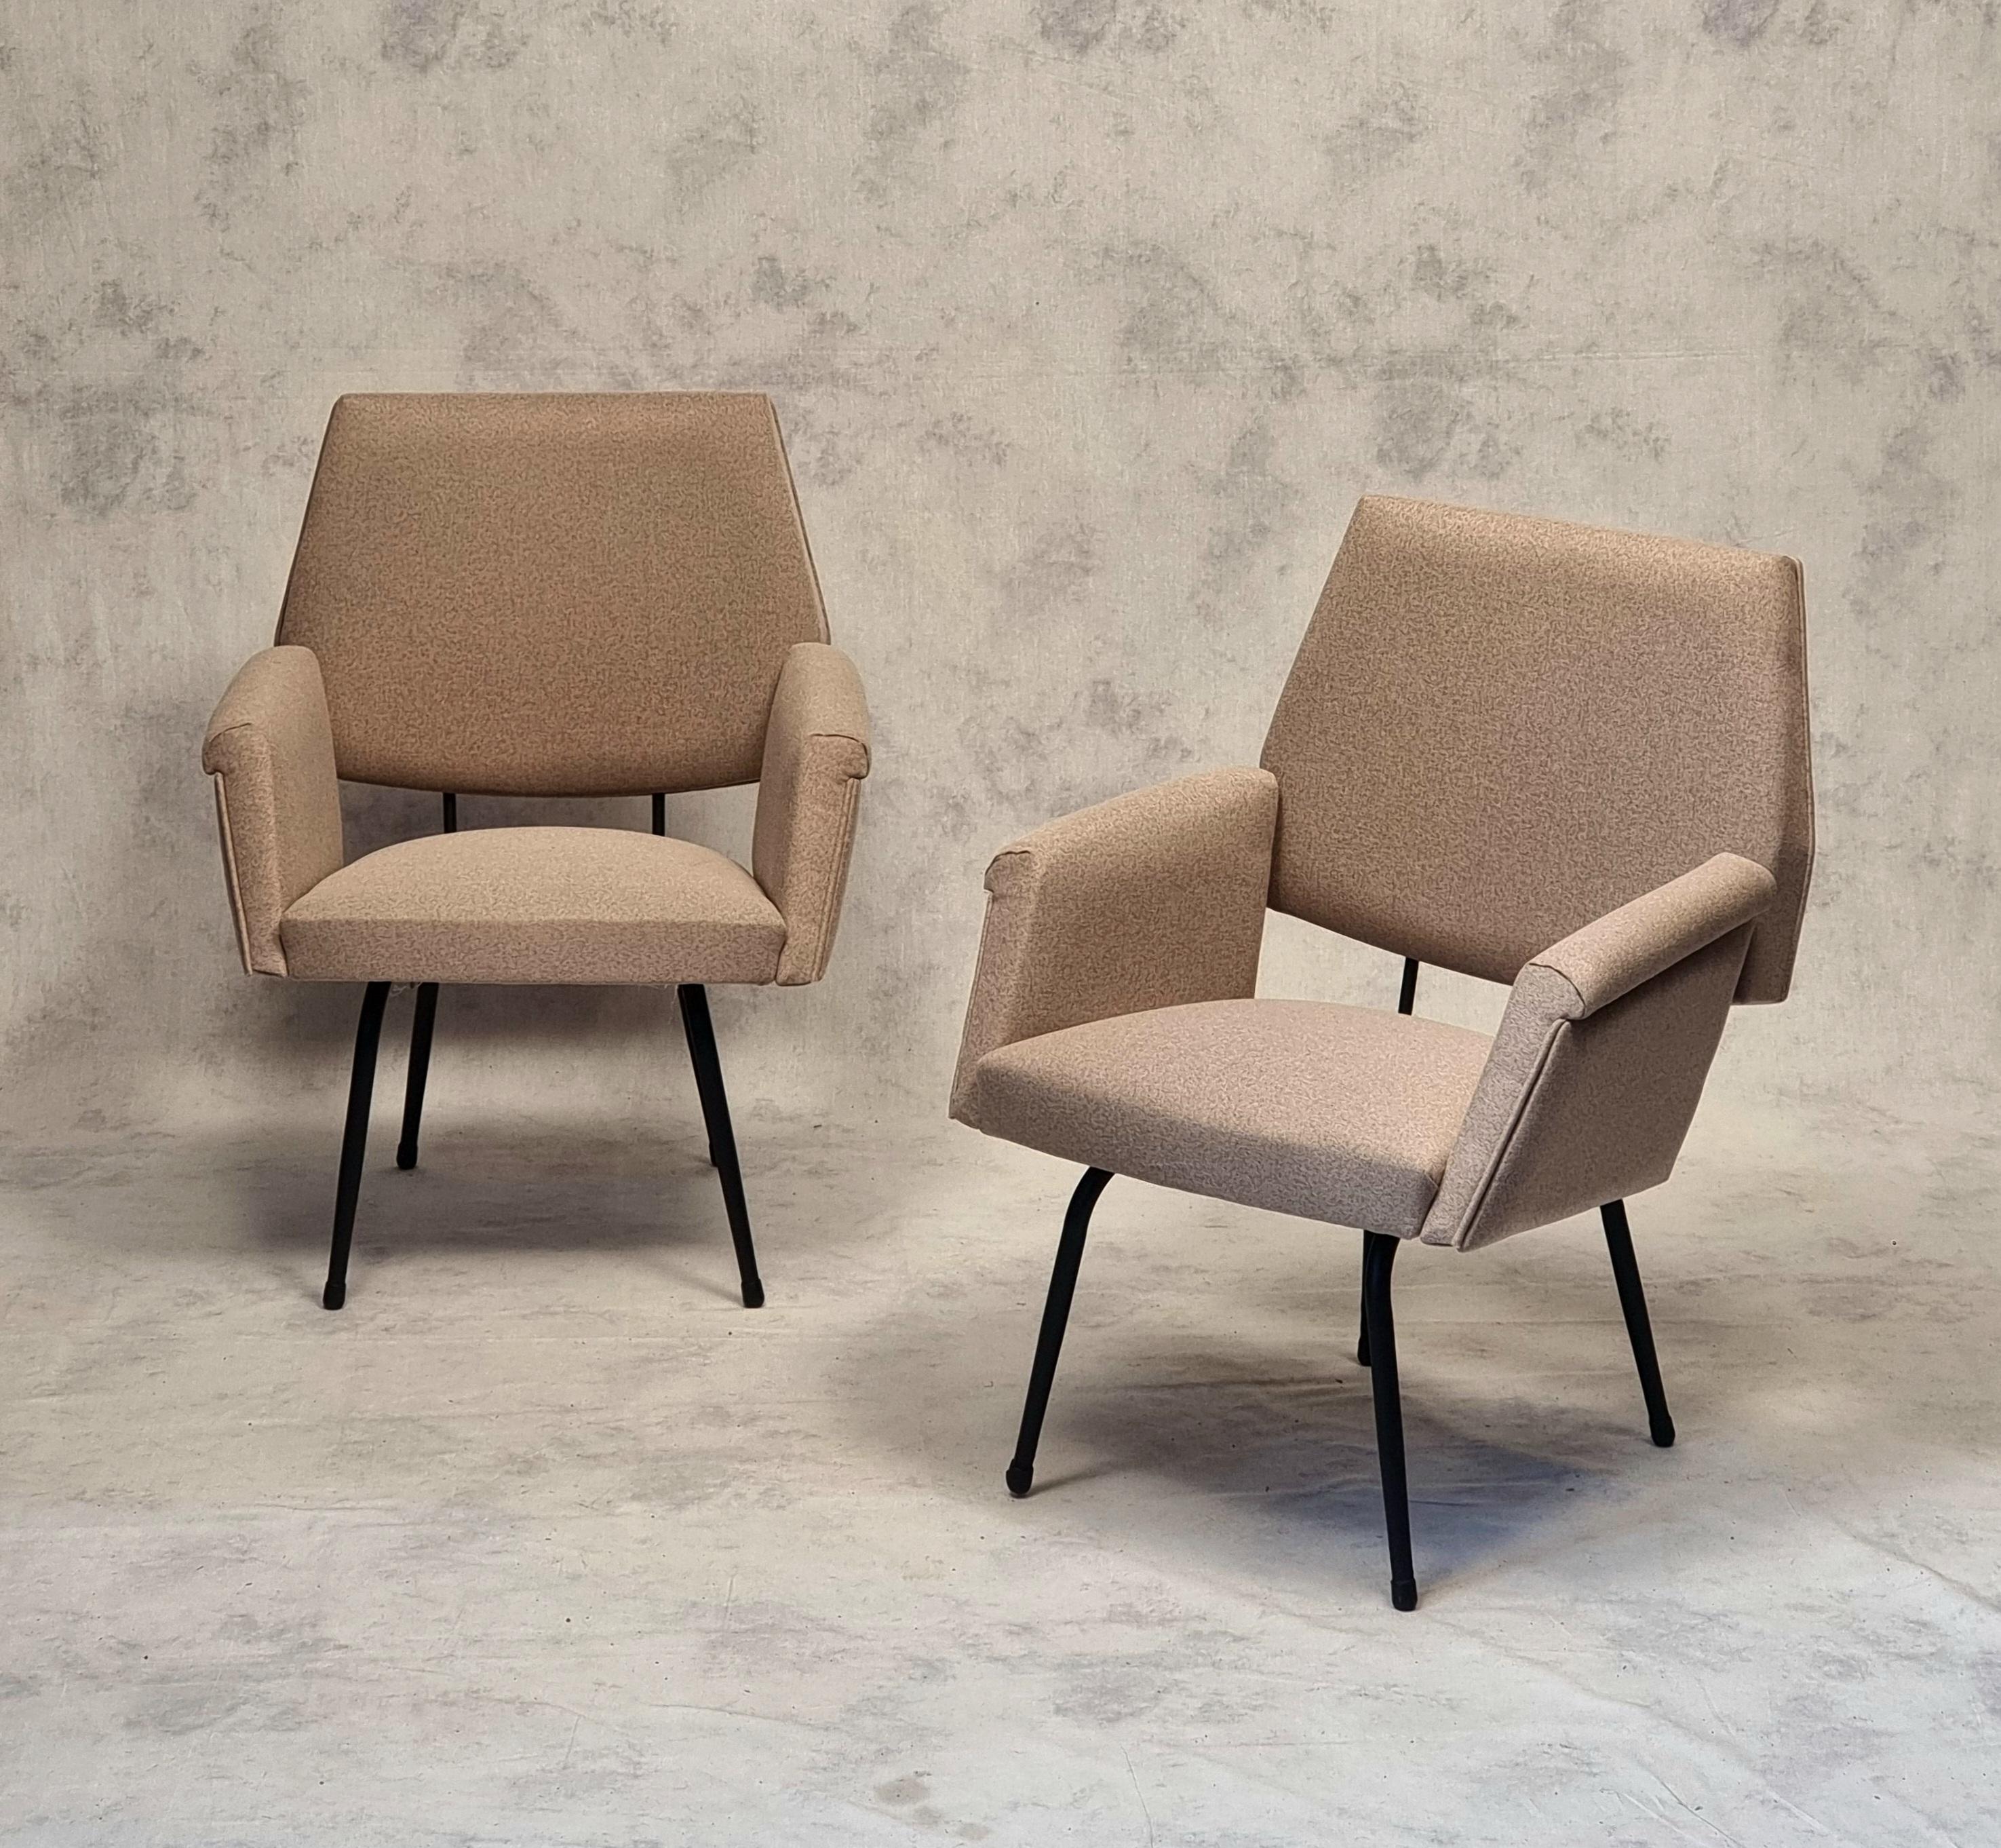 Ein Paar modernistische Sessel aus den 1950er Jahren. Diese Sessel französischer Herkunft sind typisch für die modernistische Bewegung. Sie stehen vor allem dem Werk von Pierre Guariche nahe. Sie stehen auf einem schwarz lackierten Metallrohrsockel.